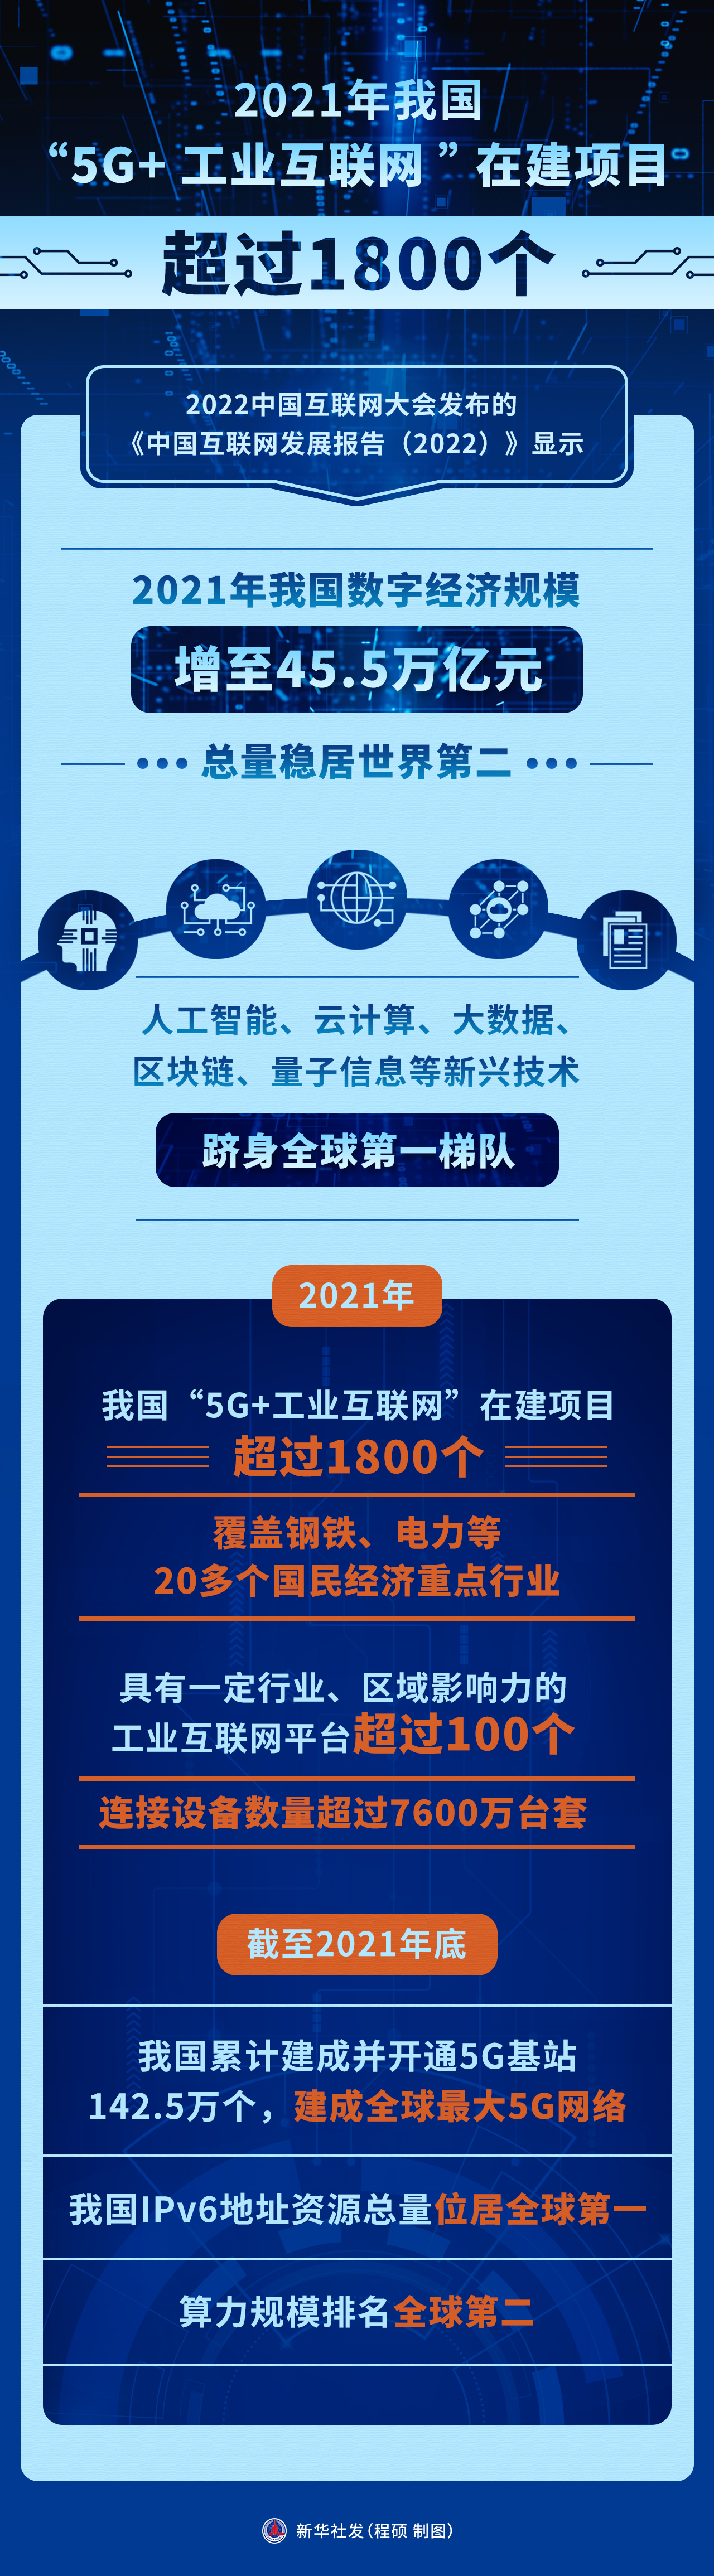 （图表）2021年我国“5G工业互联网”在建项目超过1800个 新华社发 程硕 制图.jpg